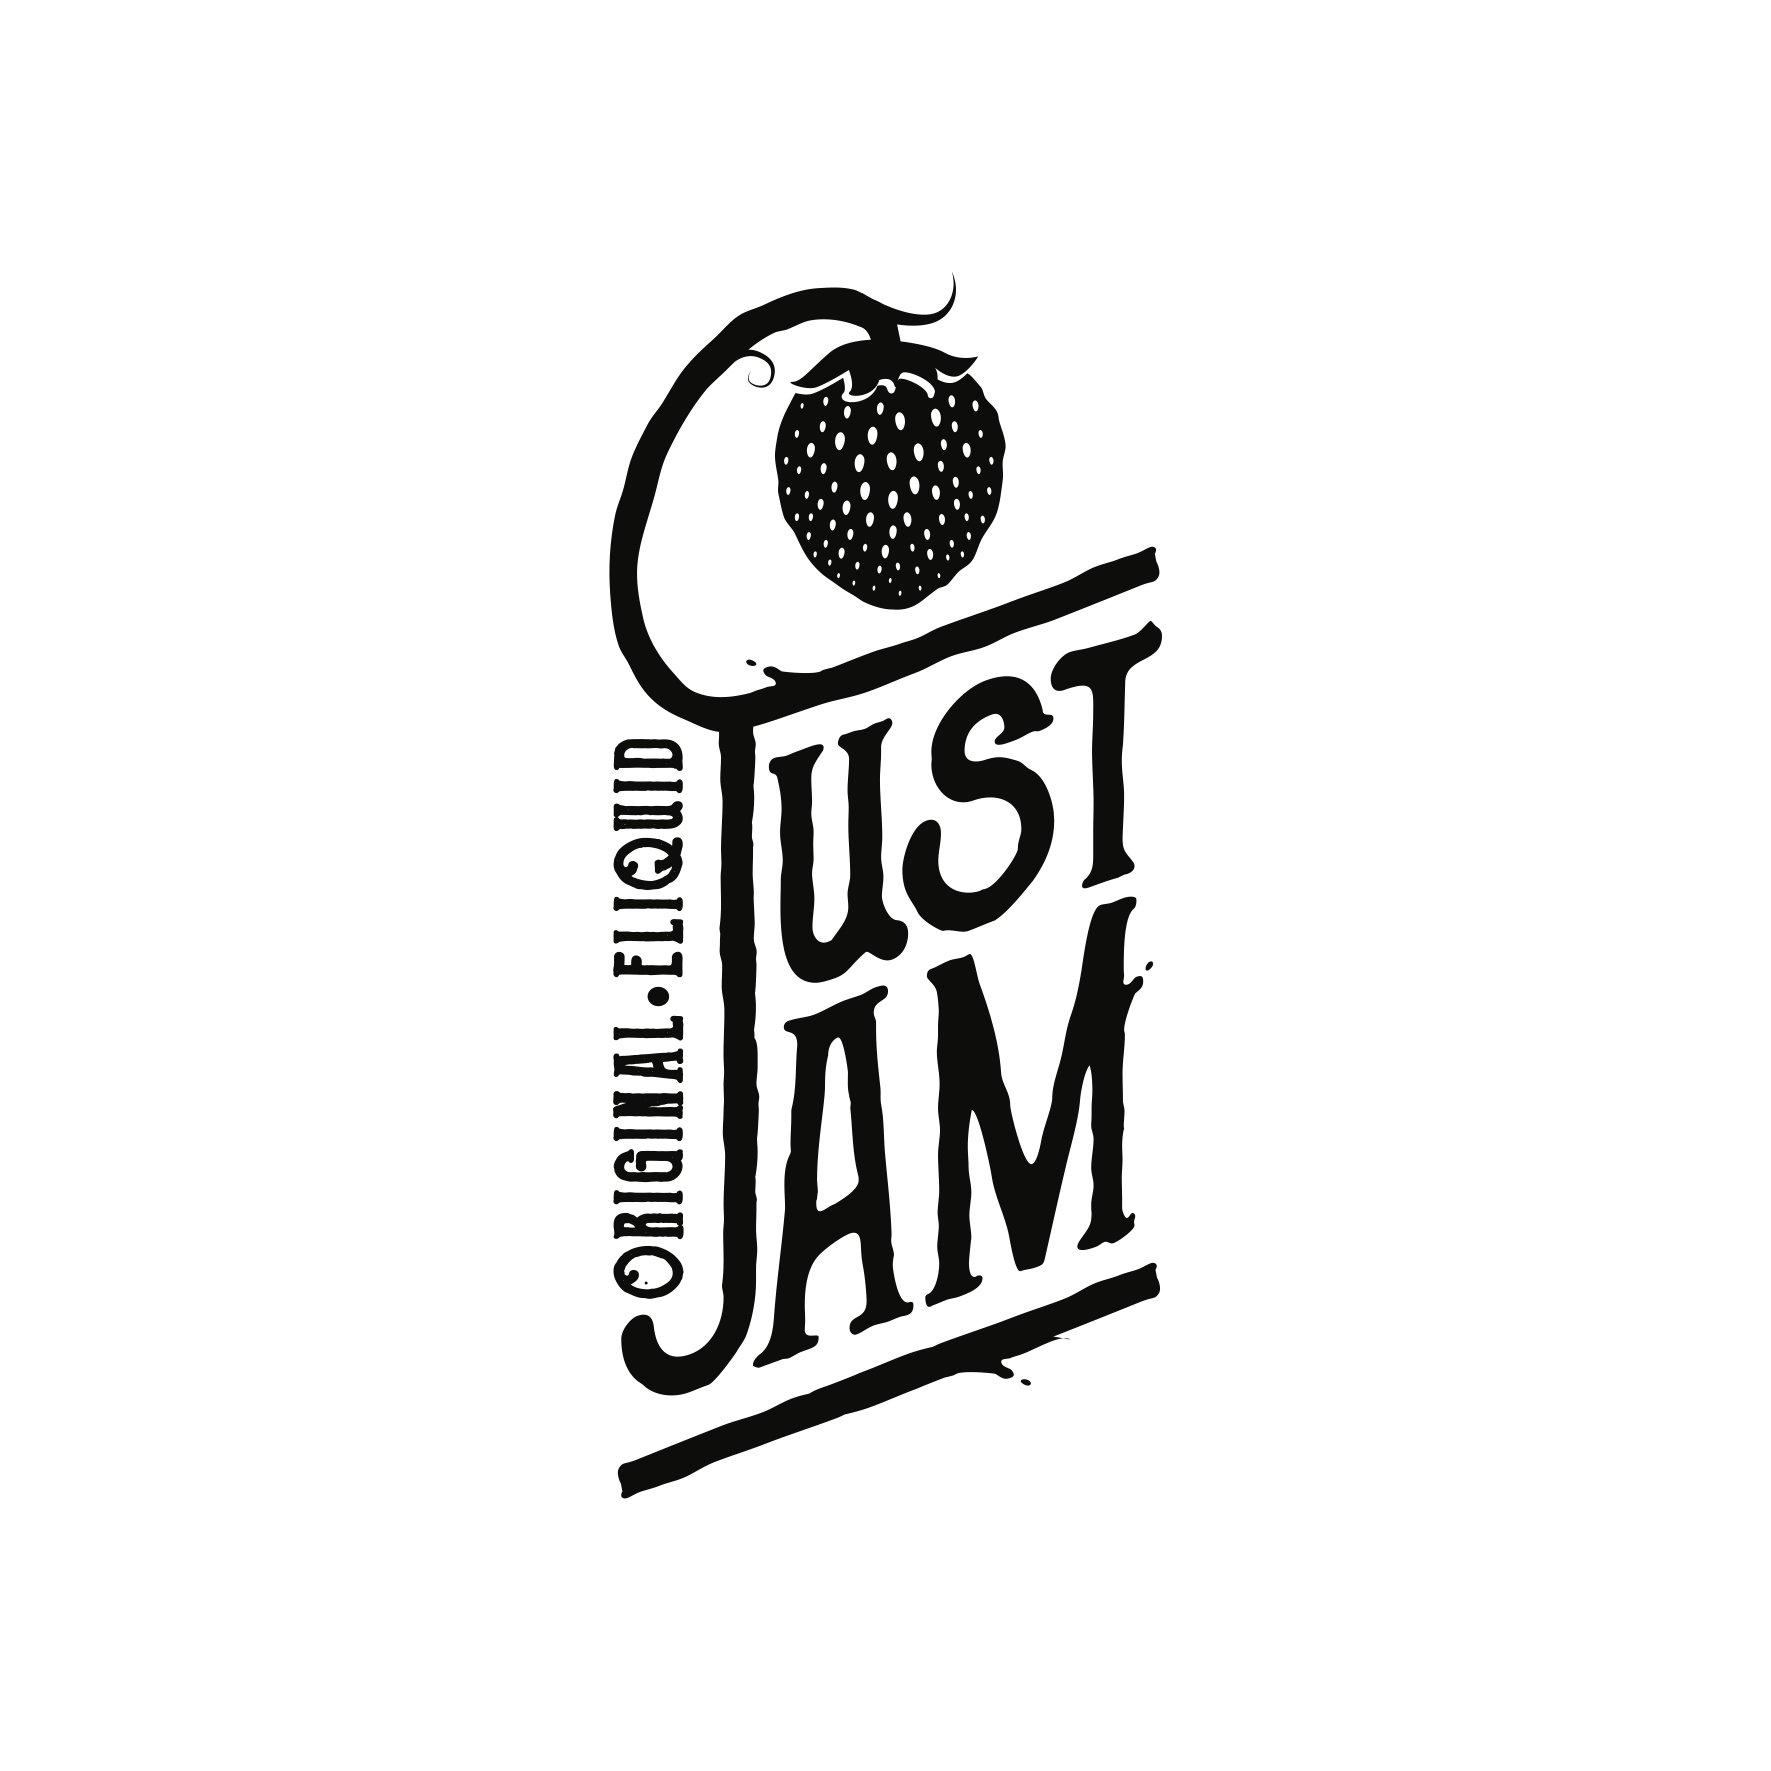 Just Jam